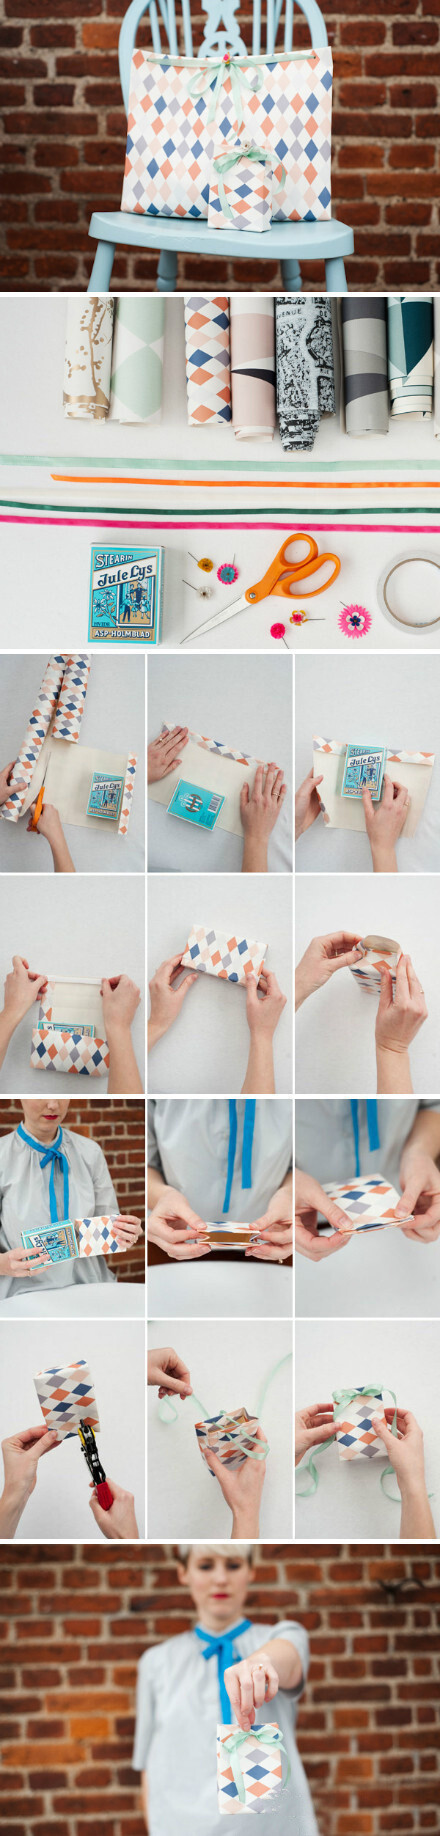 【折纸教程】简易包装